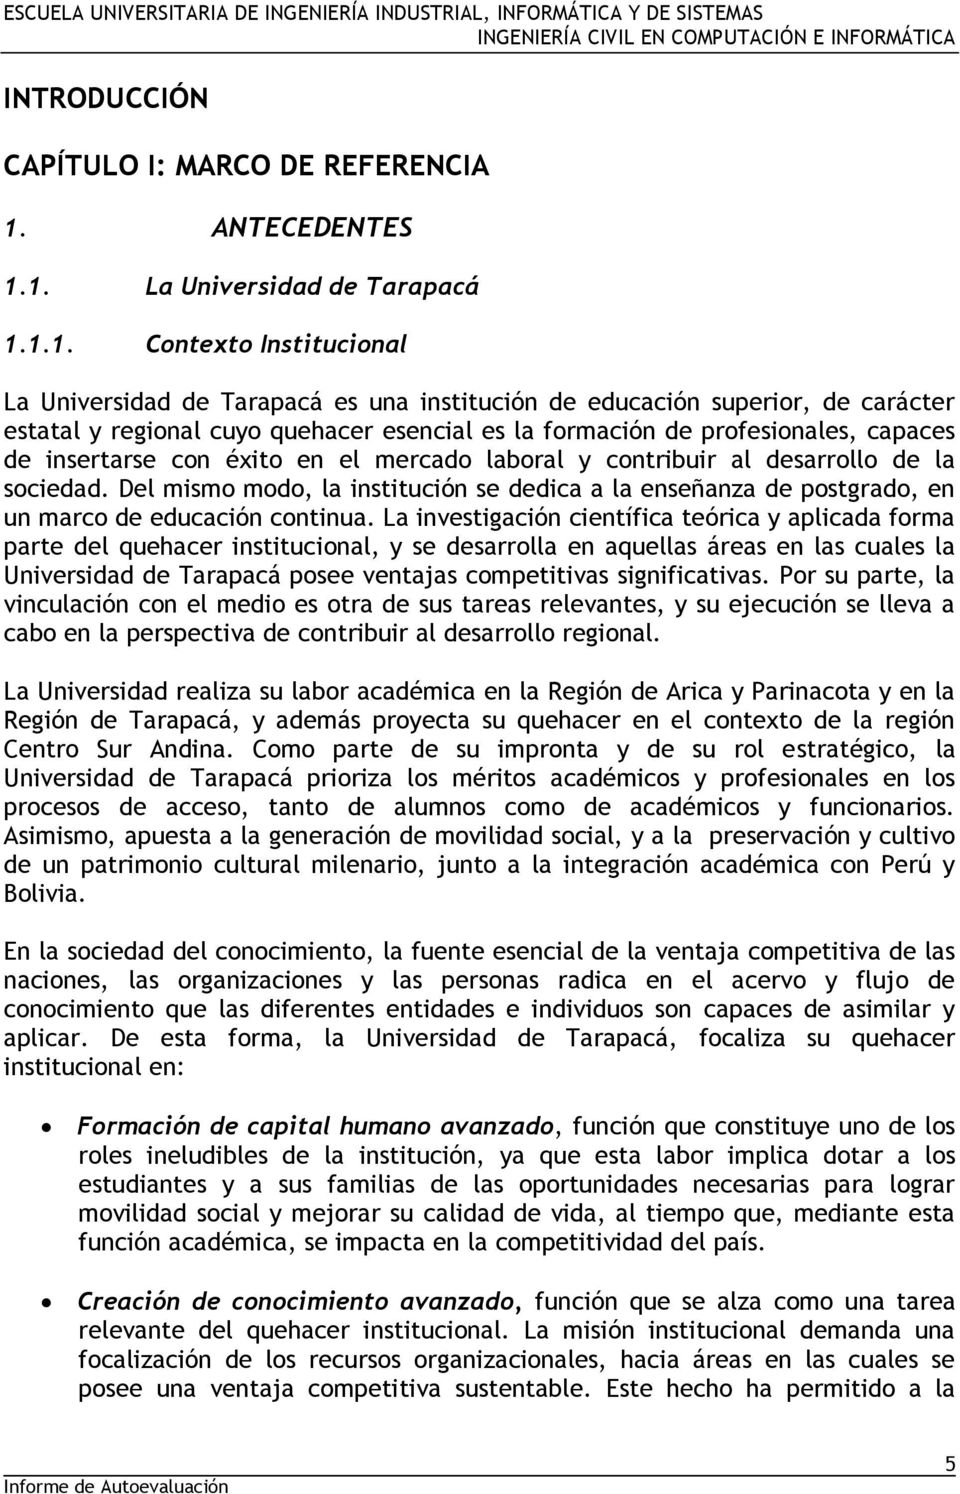 1. La Universidad de Tarapacá 1.1.1. Contexto Institucional La Universidad de Tarapacá es una institución de educación superior, de carácter estatal y regional cuyo quehacer esencial es la formación